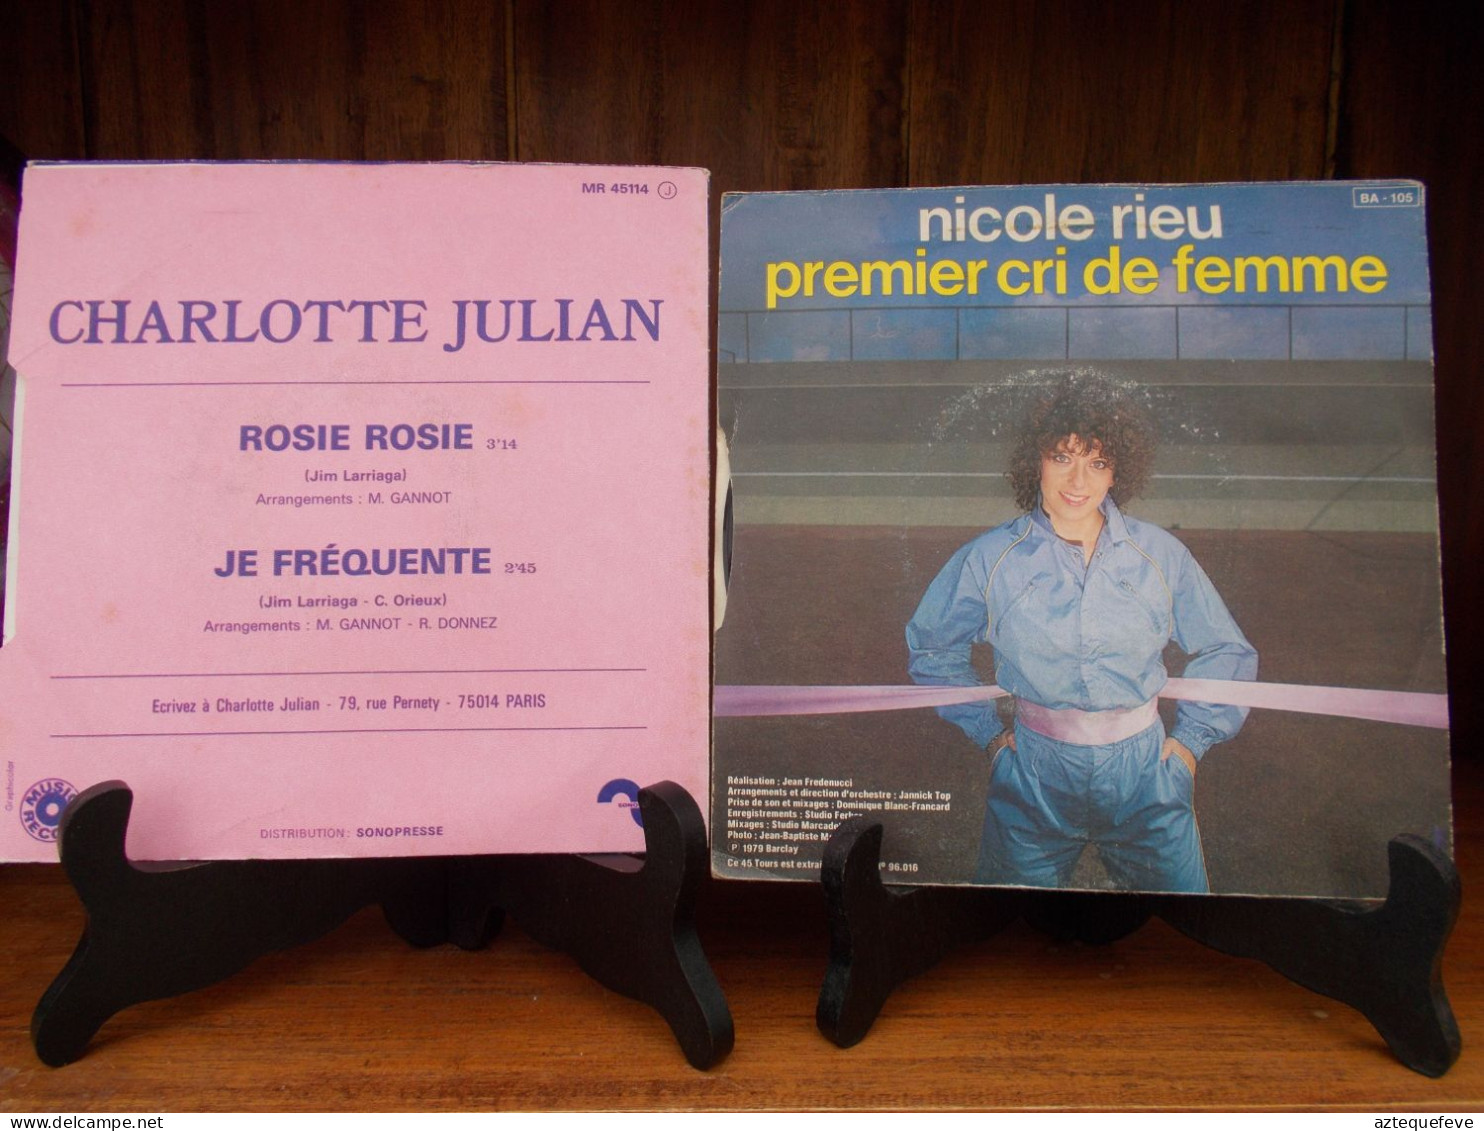 2 VINYLS CHARLOTTE JULIAN ET NICOLE RIEU 1979 - Altri - Francese